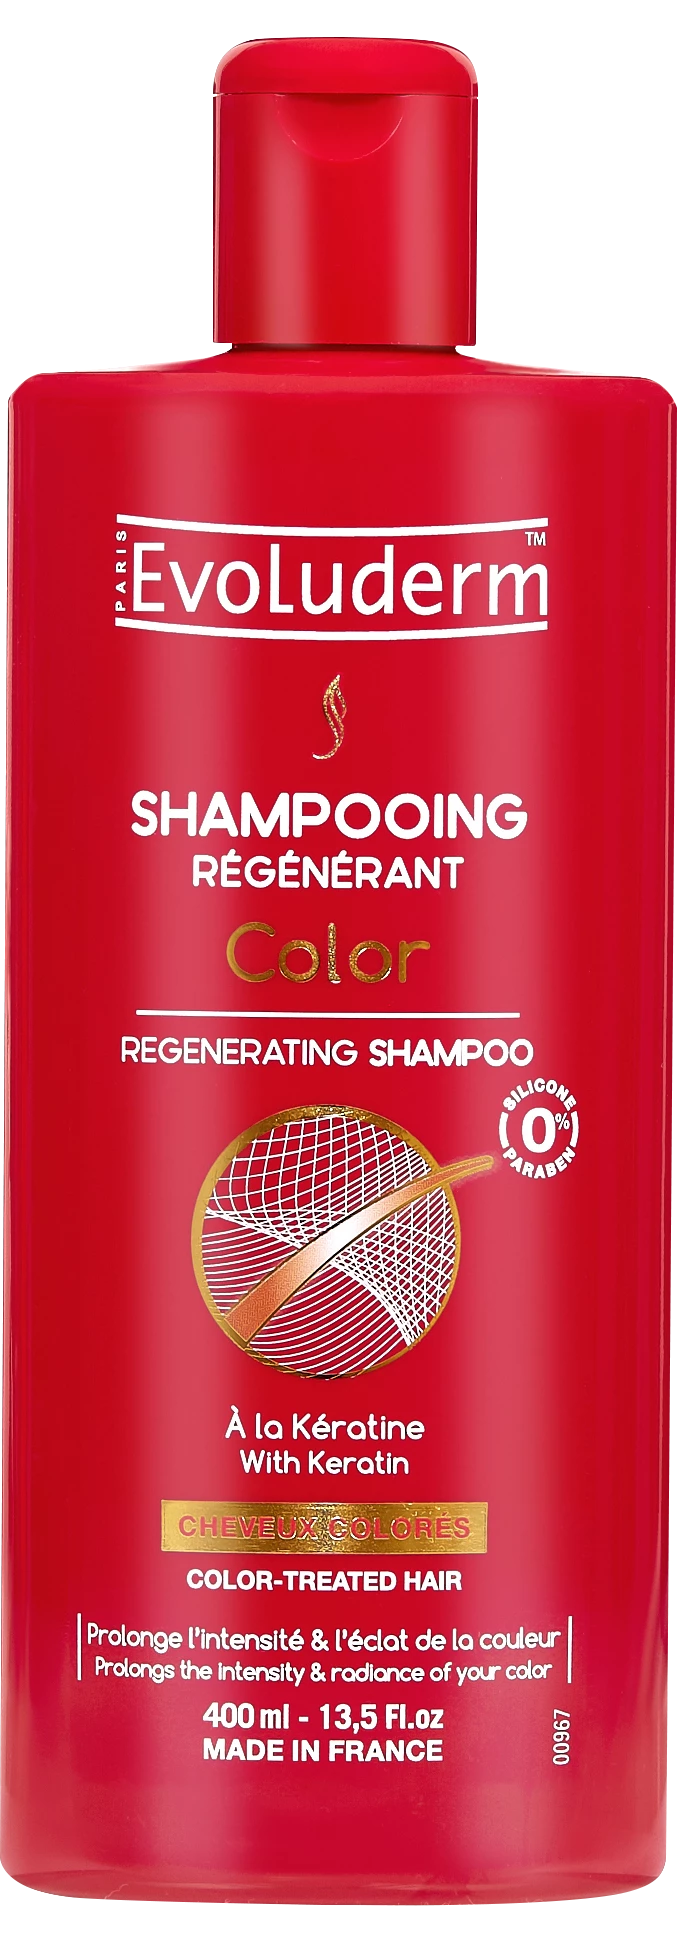 Shampoo Regenerador de Cor, 400ml - EVOLUDERM